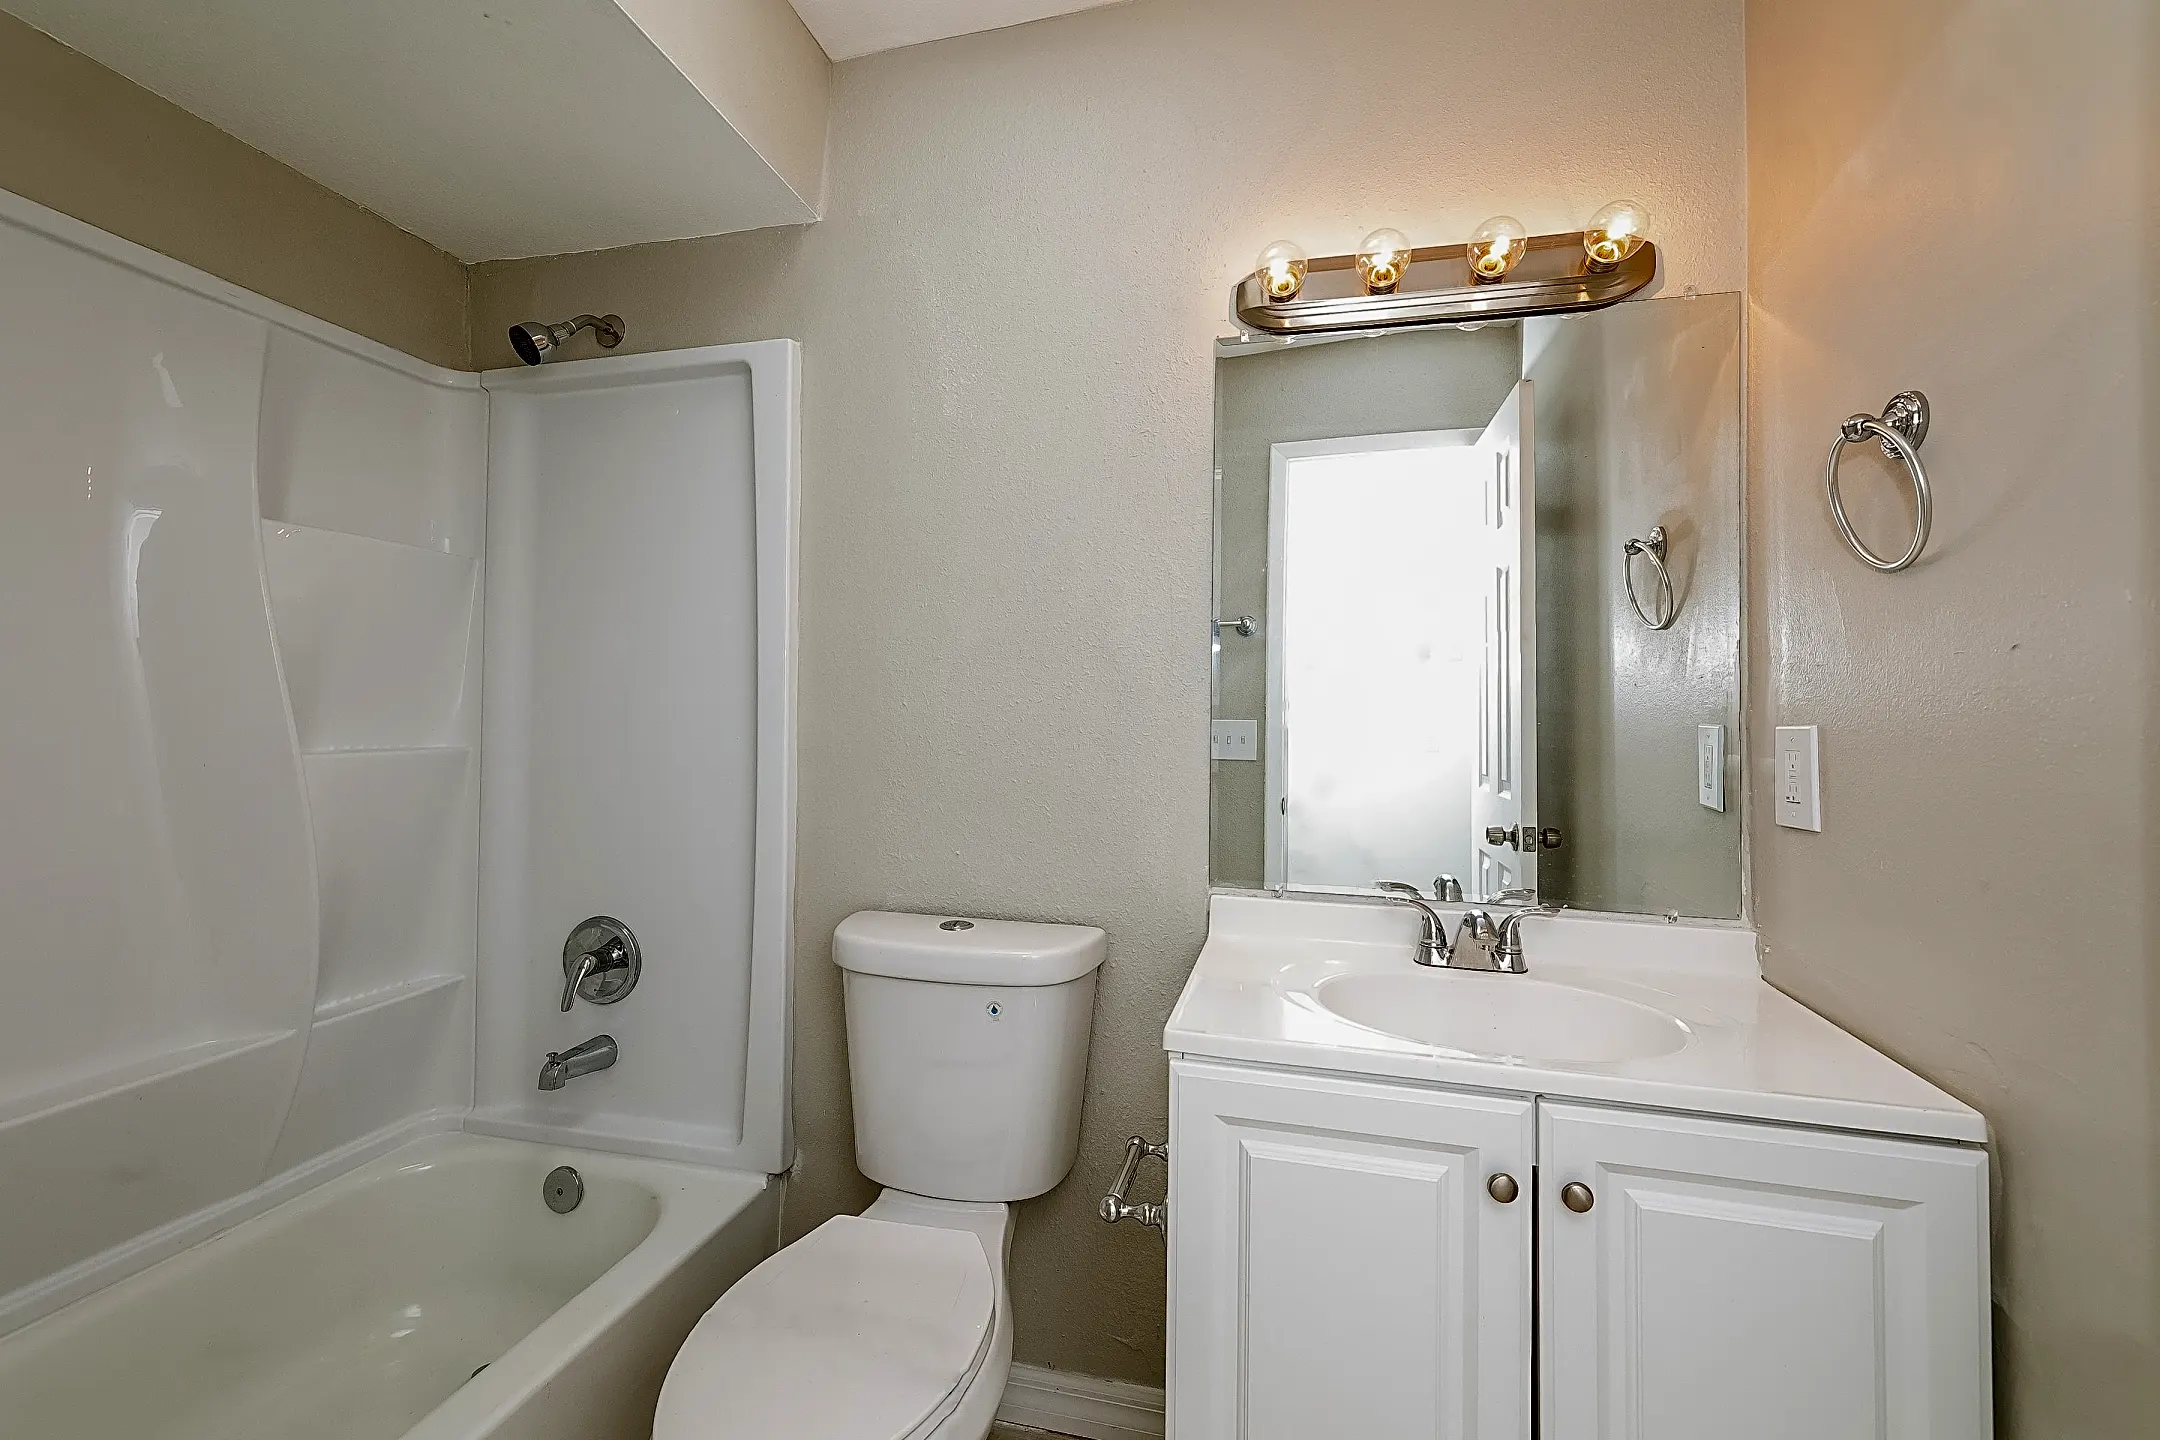 Bathroom - 1713 Brown St - Kissimmee, FL